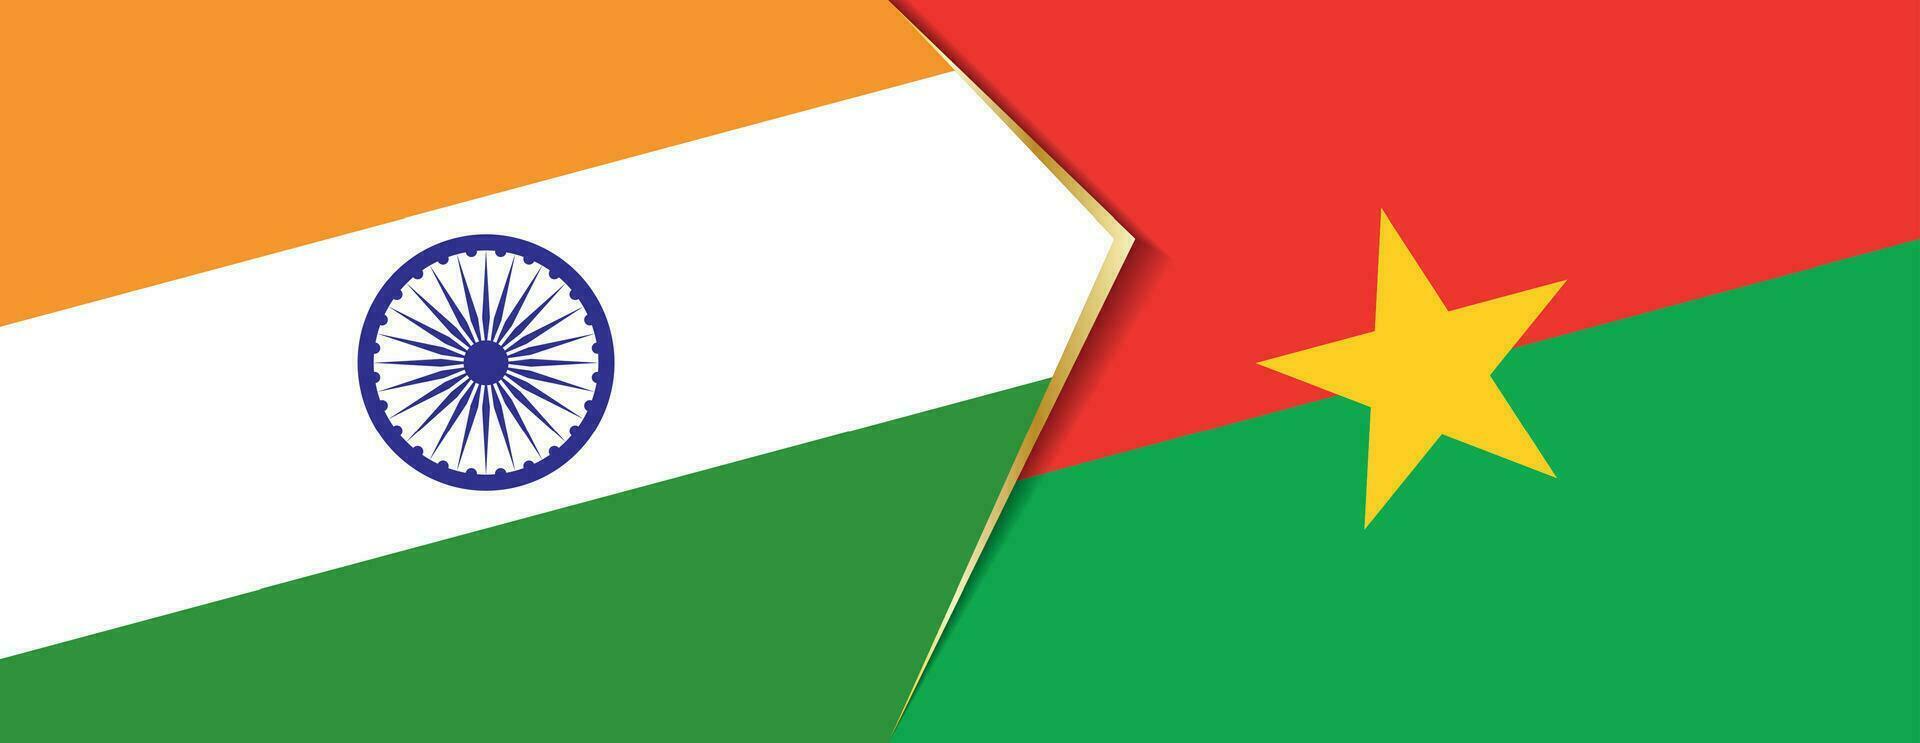 India y burkina faso banderas, dos vector banderas